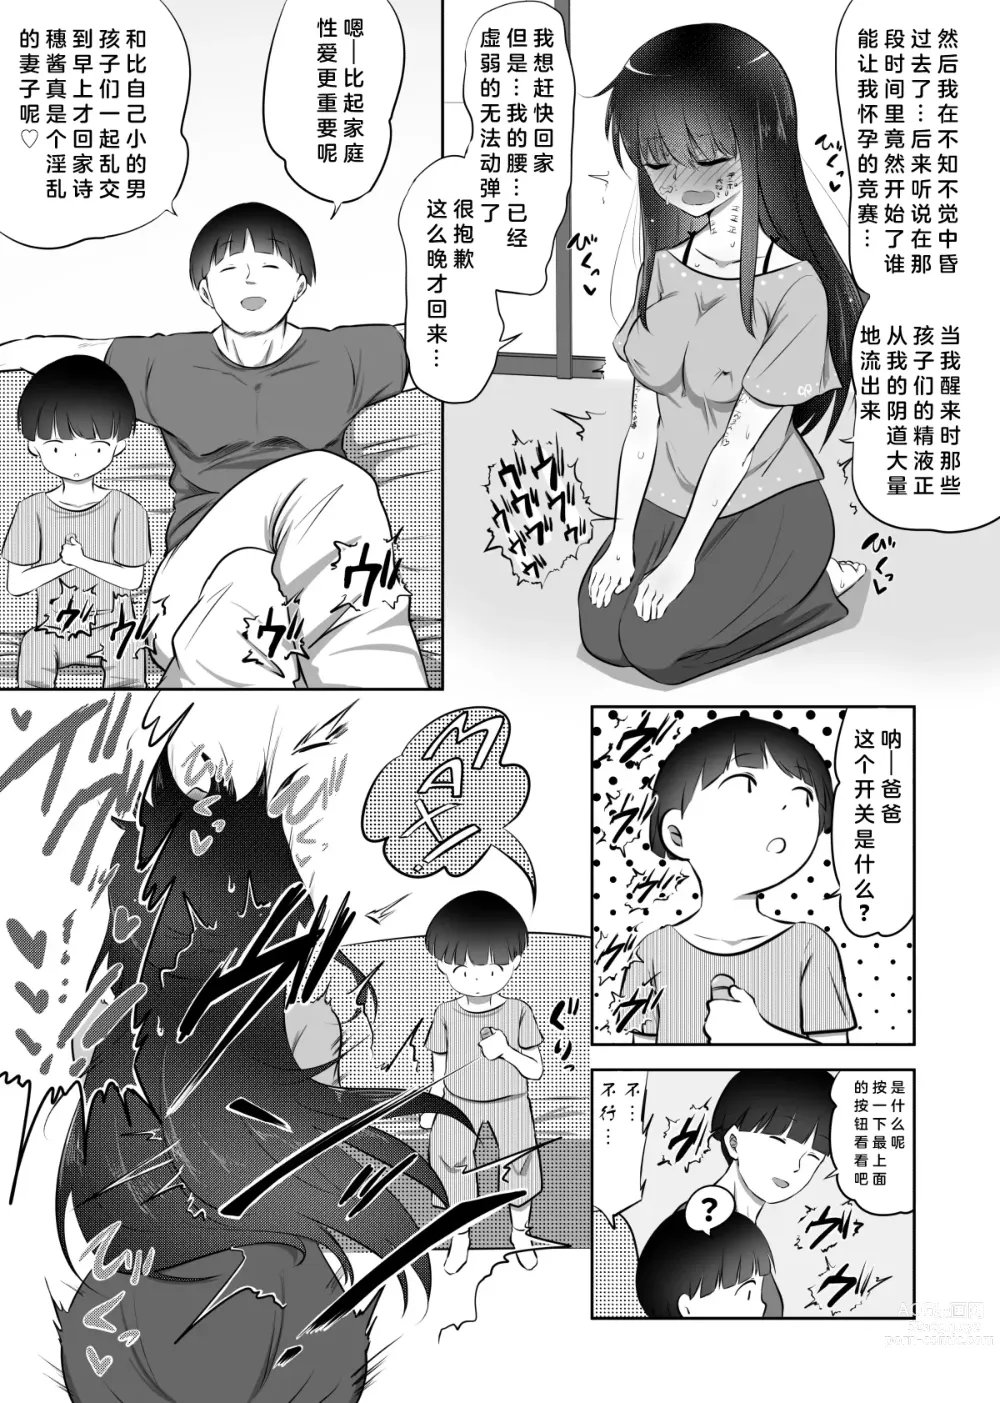 Page 23 of doujinshi Shiho-chan no Danna Dairiken